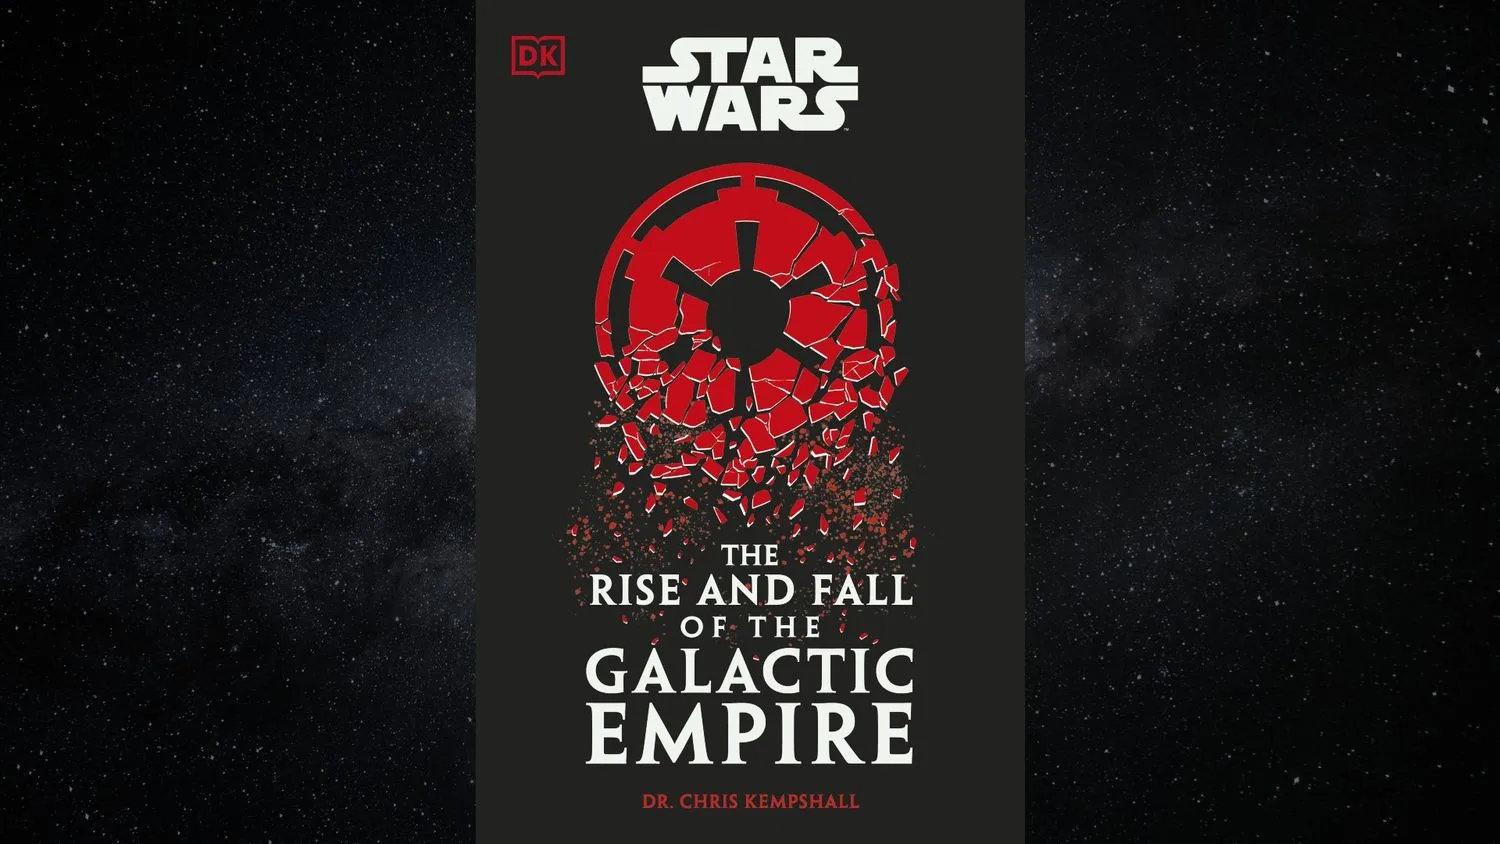 Mehr über den Artikel erfahren Der Aufstieg und Fall des Galaktischen Imperiums“ untersucht die düstere imperiale Herrschaft von Star Wars